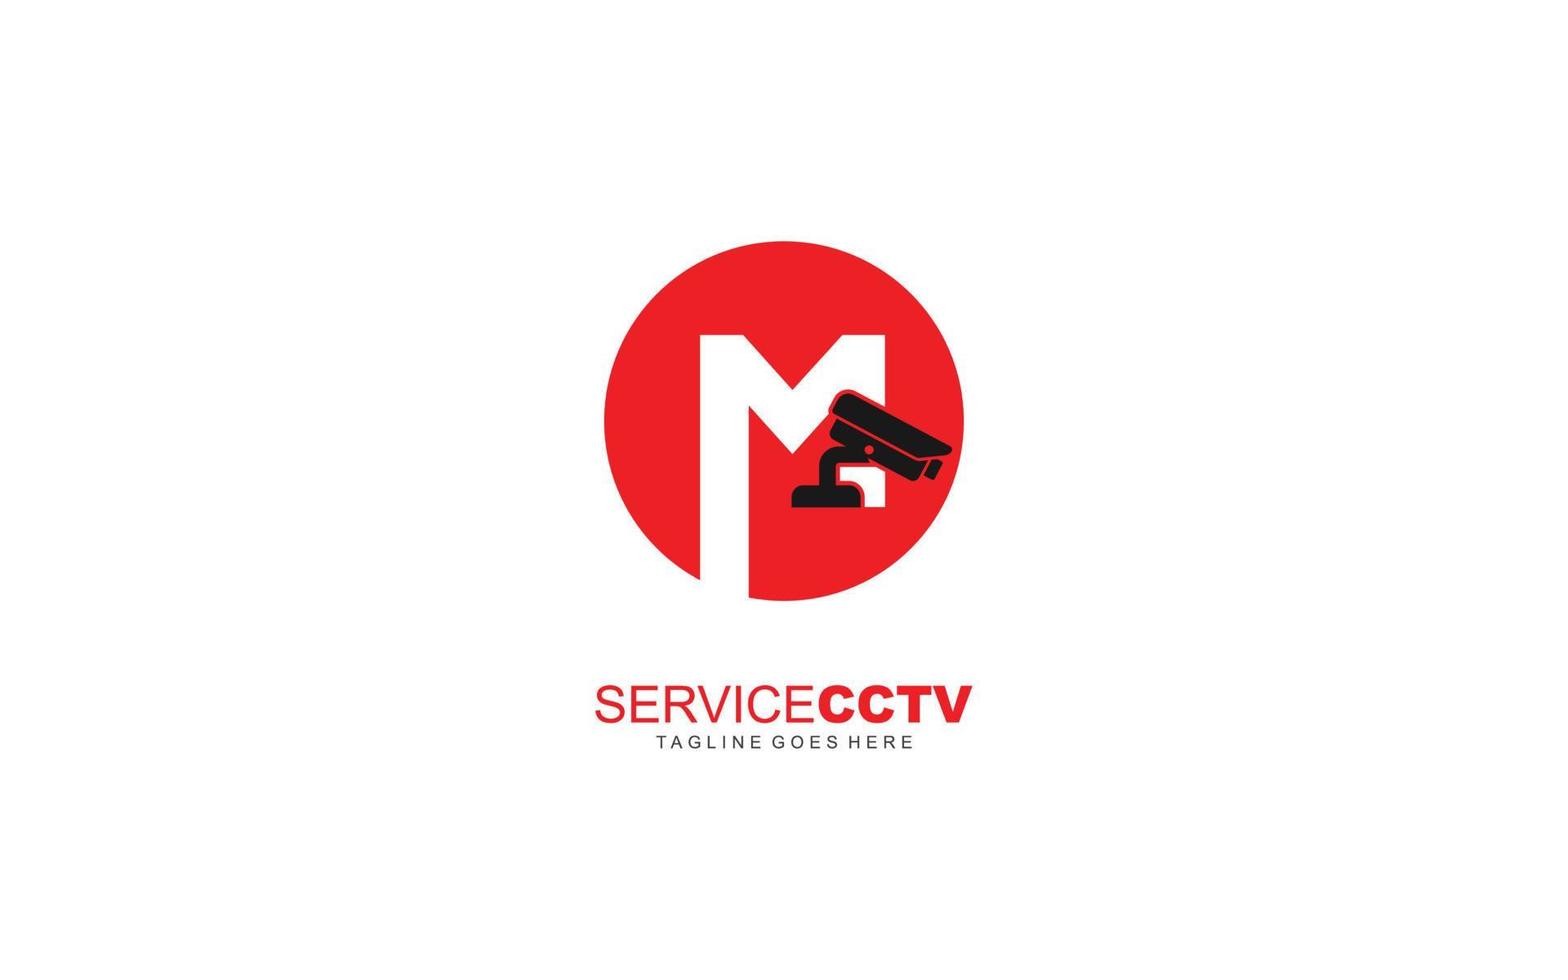 m logo cctv voor identiteit. veiligheid sjabloon vector illustratie voor uw merk.